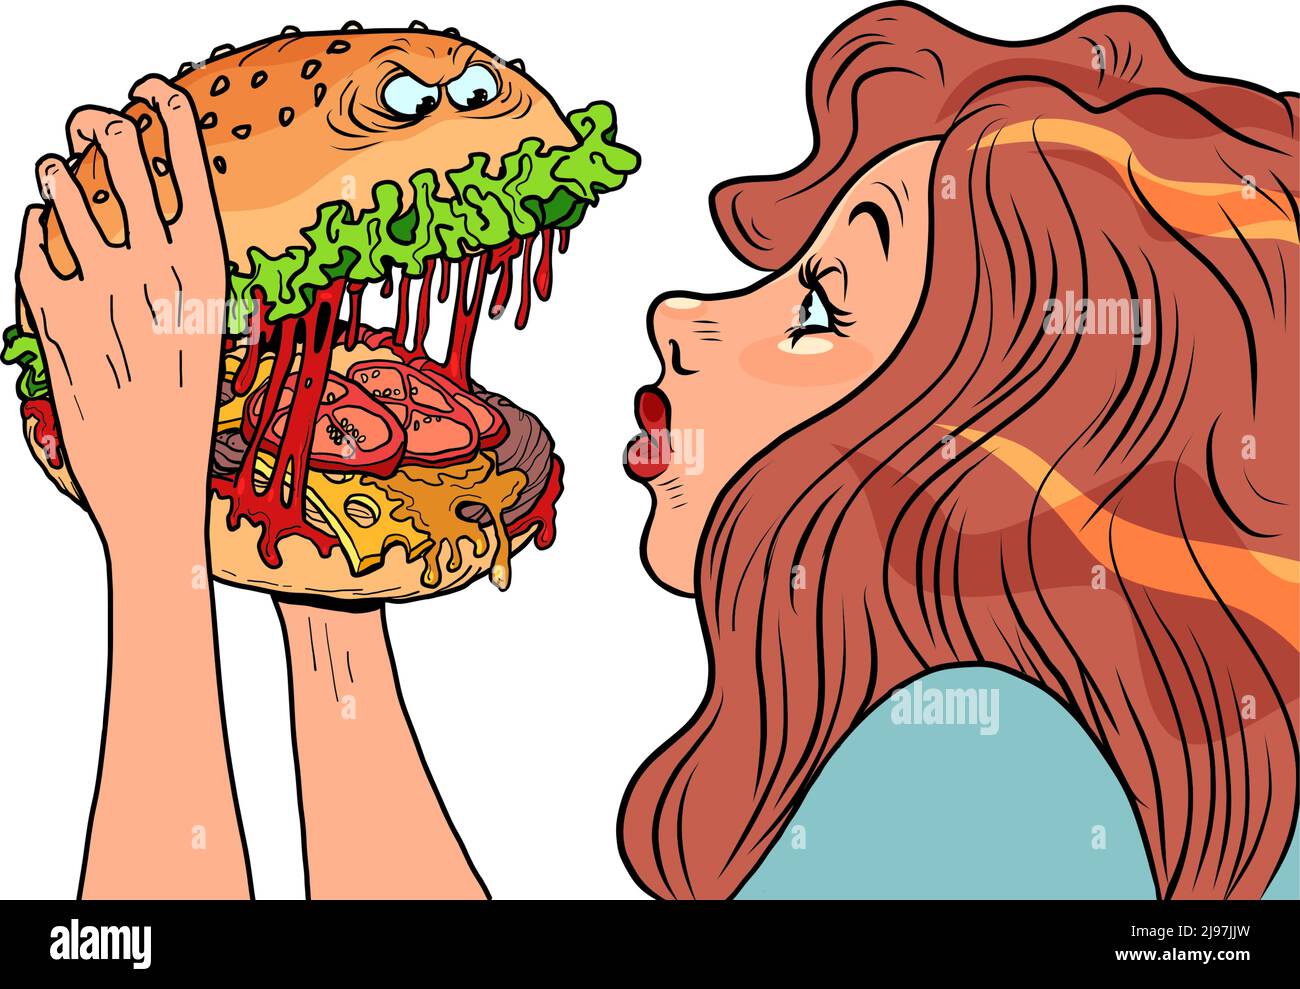 El personaje de la hamburguesa de monstruo pica a una mujer en un restaurante, comida rápida humor Ilustración del Vector